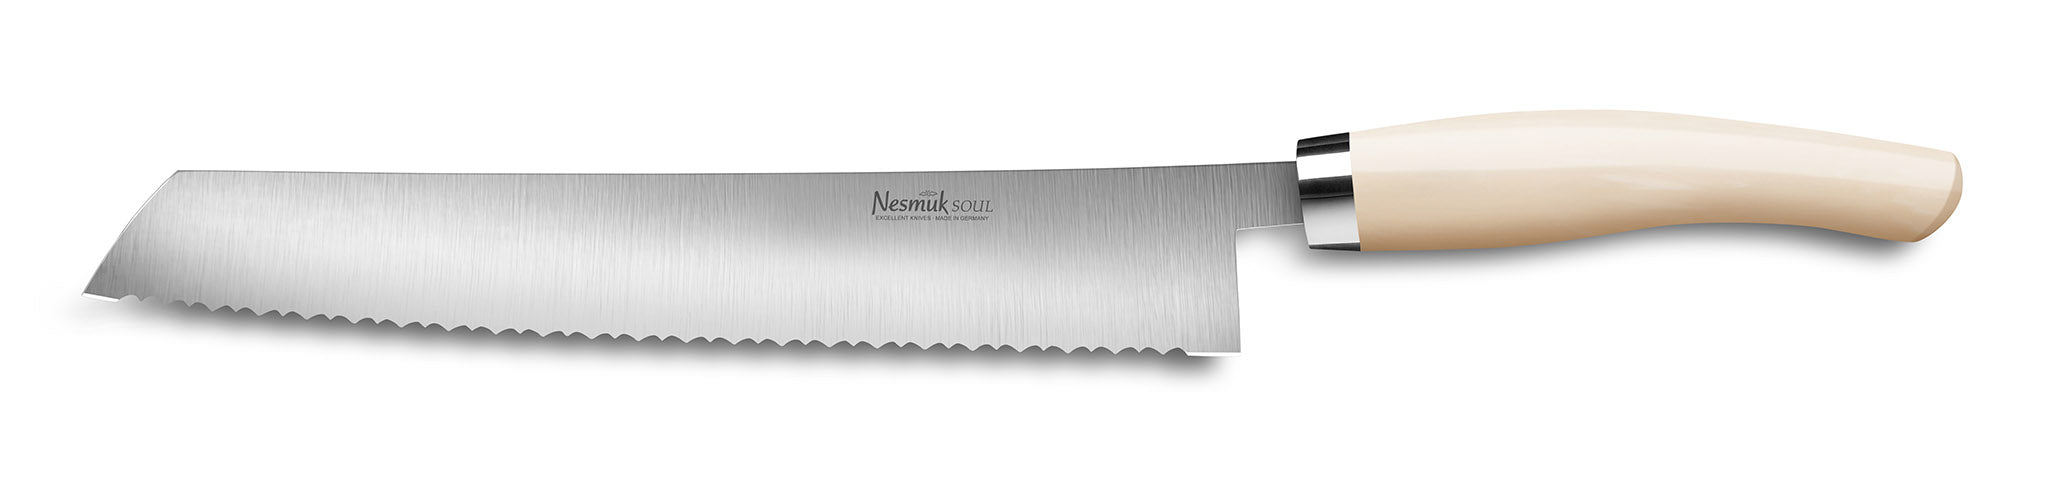 Brotmesser Soul von Nesmuk mit Griff aus Hightech Kunststoff Juma Ivory